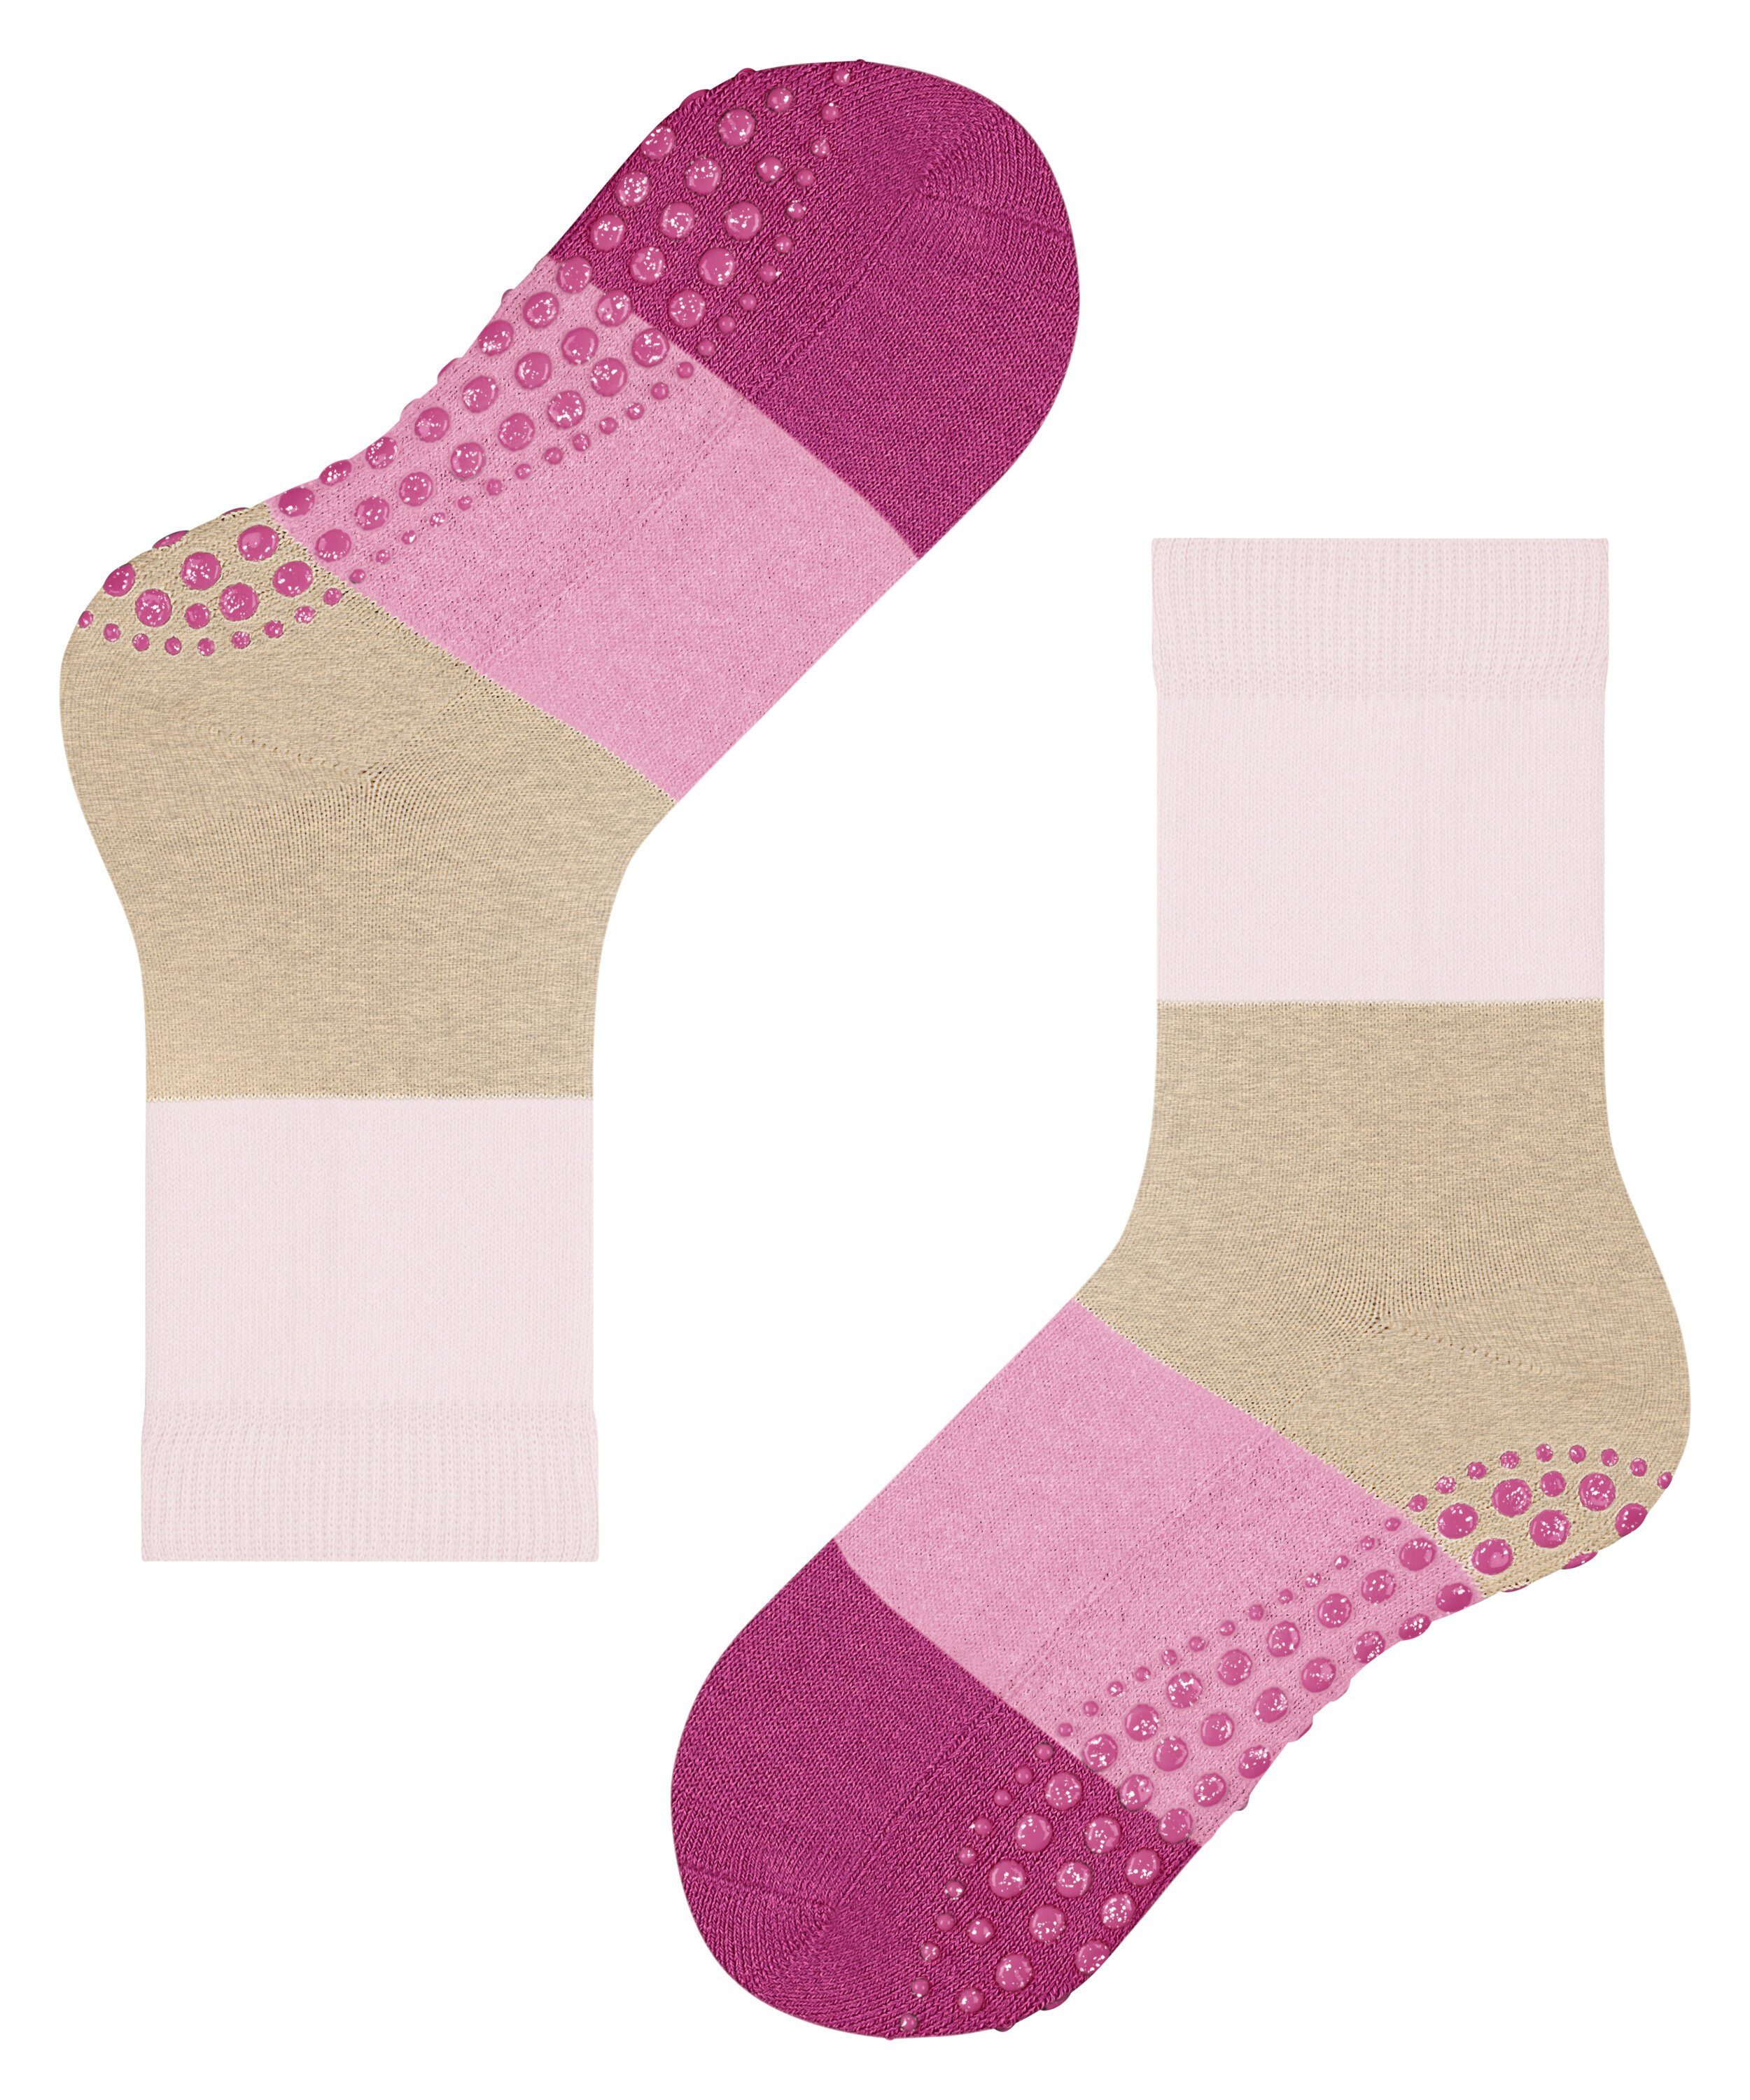 FALKE Socken Summer (8902) rose powder (1-Paar)